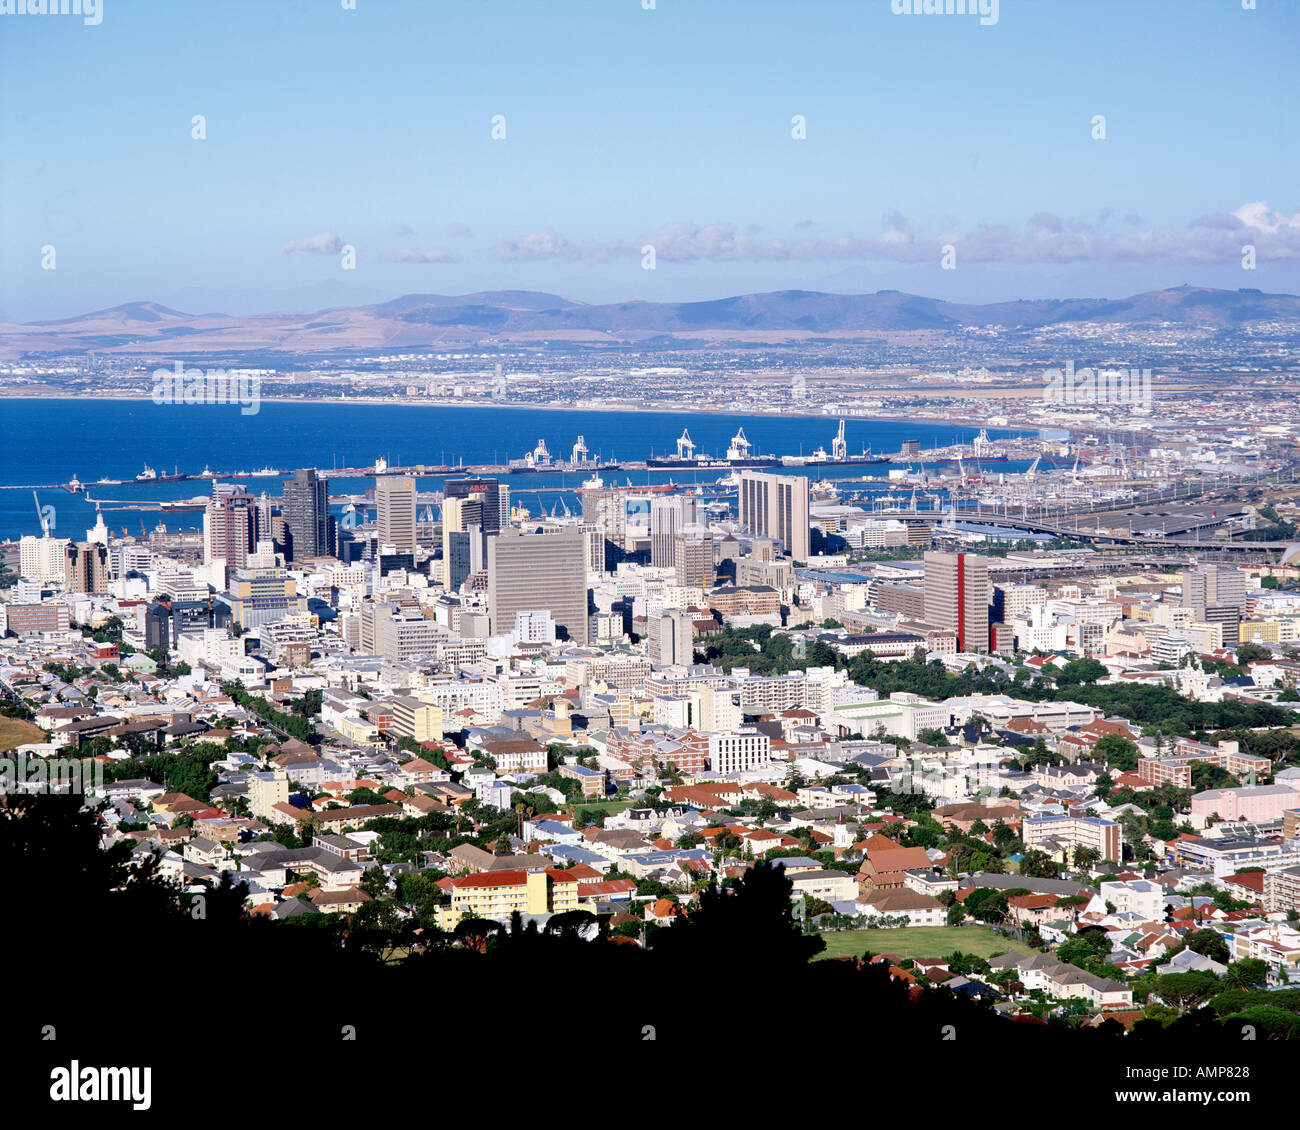 La ville du Cap et Table Bay Harbour en Afrique du Sud. Banque D'Images